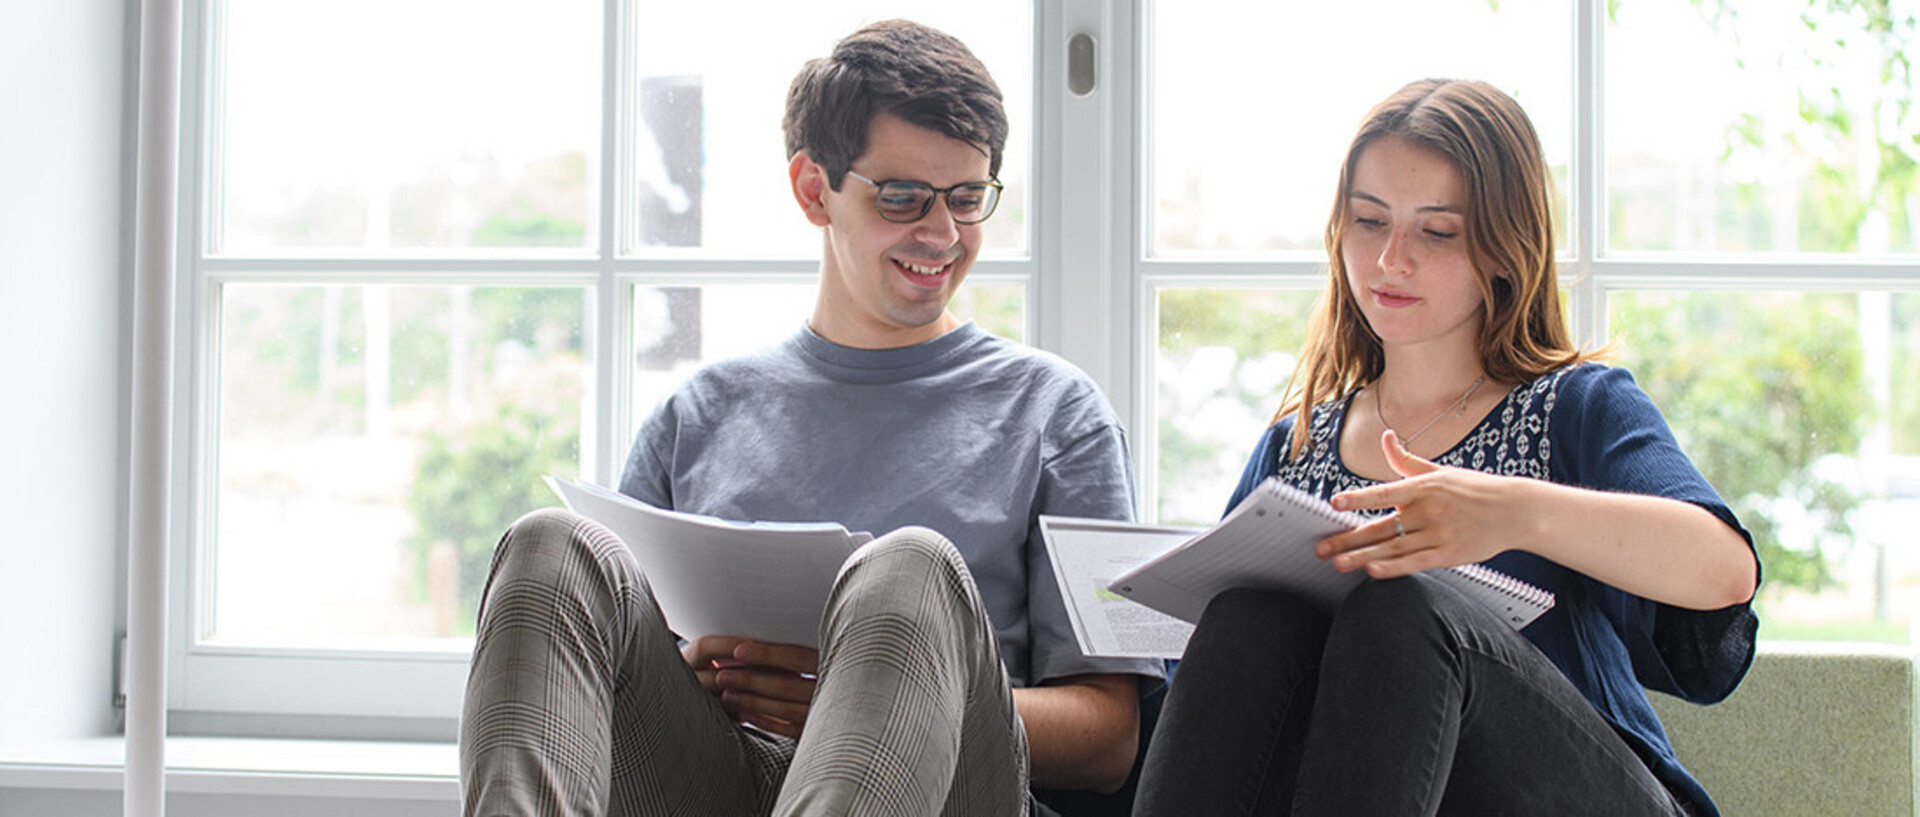 Ein Student und eine Studentin sitzen in seinem Seminarraum am Fenster und betrachten gemeinsam Notizen.